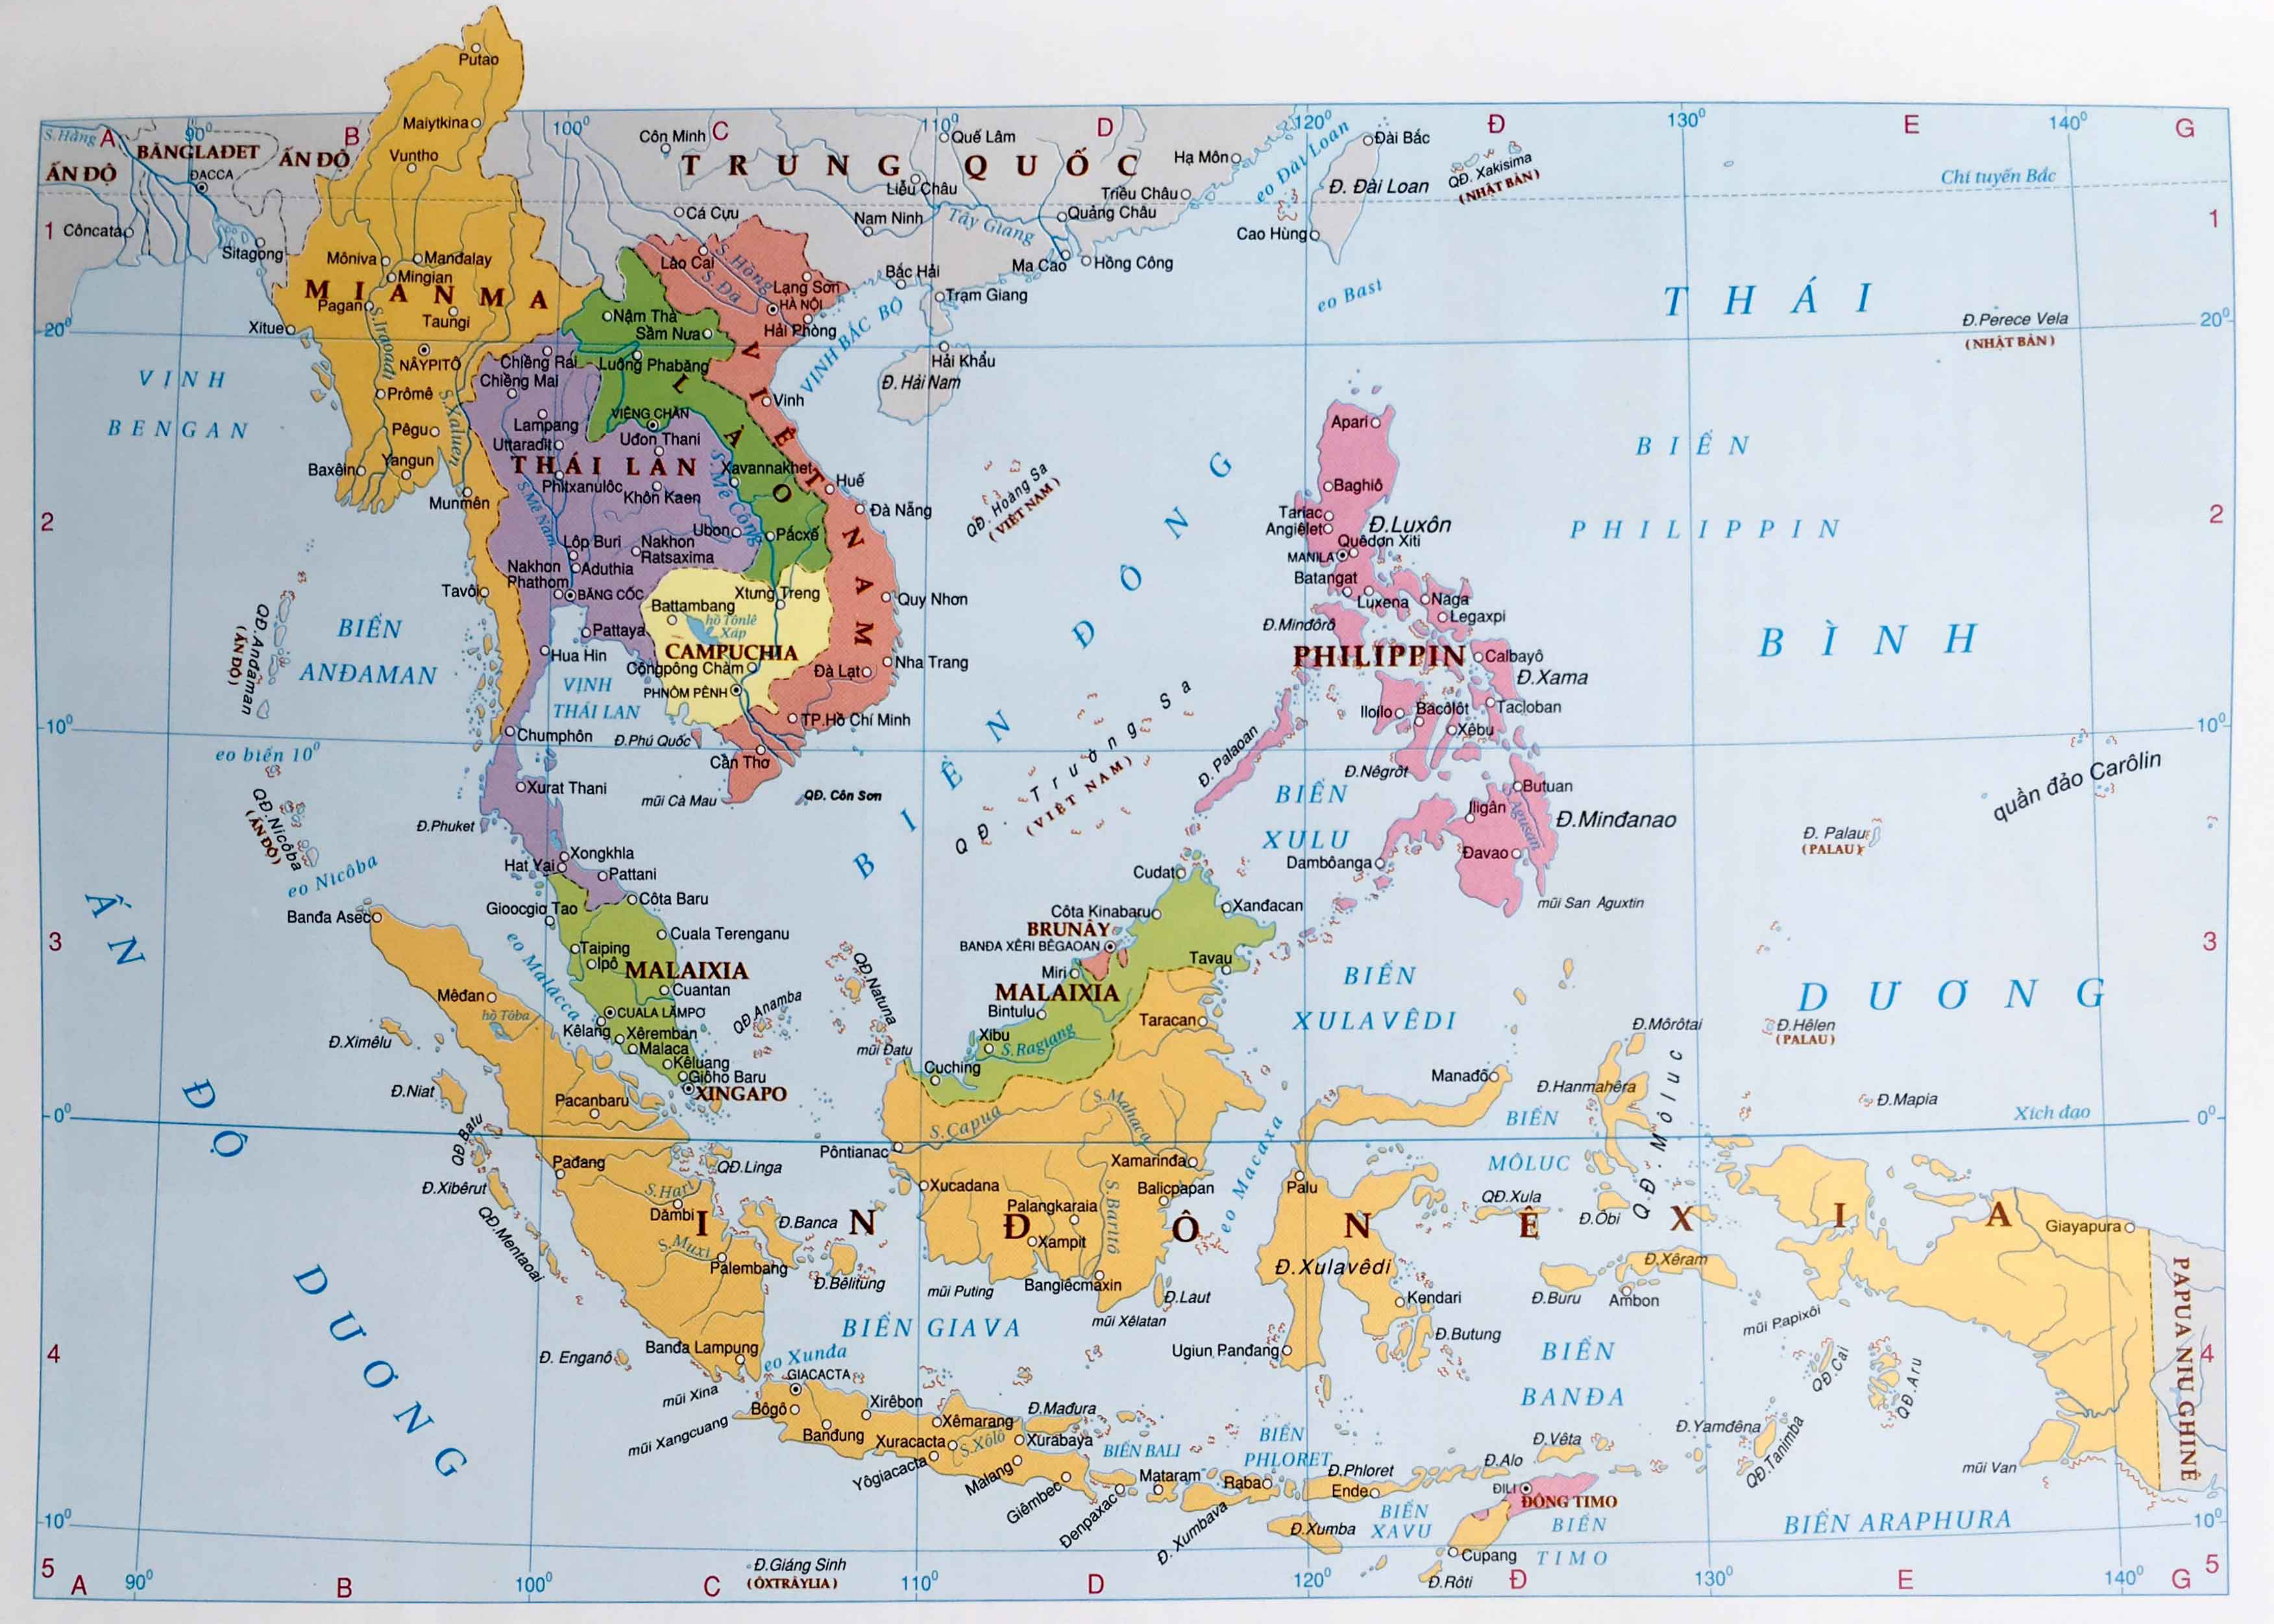 Bản đồ mới nhất châu Á năm 2024 sẽ cập nhật các thông tin mới nhất về điểm đến du lịch, kế hoạch phát triển và cơ hội kinh doanh trong khu vực. Việt Nam với vị trí địa lý chiến lược, nổi bật với vẻ đẹp thiên nhiên kỳ vĩ và nền văn hóa phong phú sẽ thu hút nhiều du khách và nhà đầu tư quan tâm.